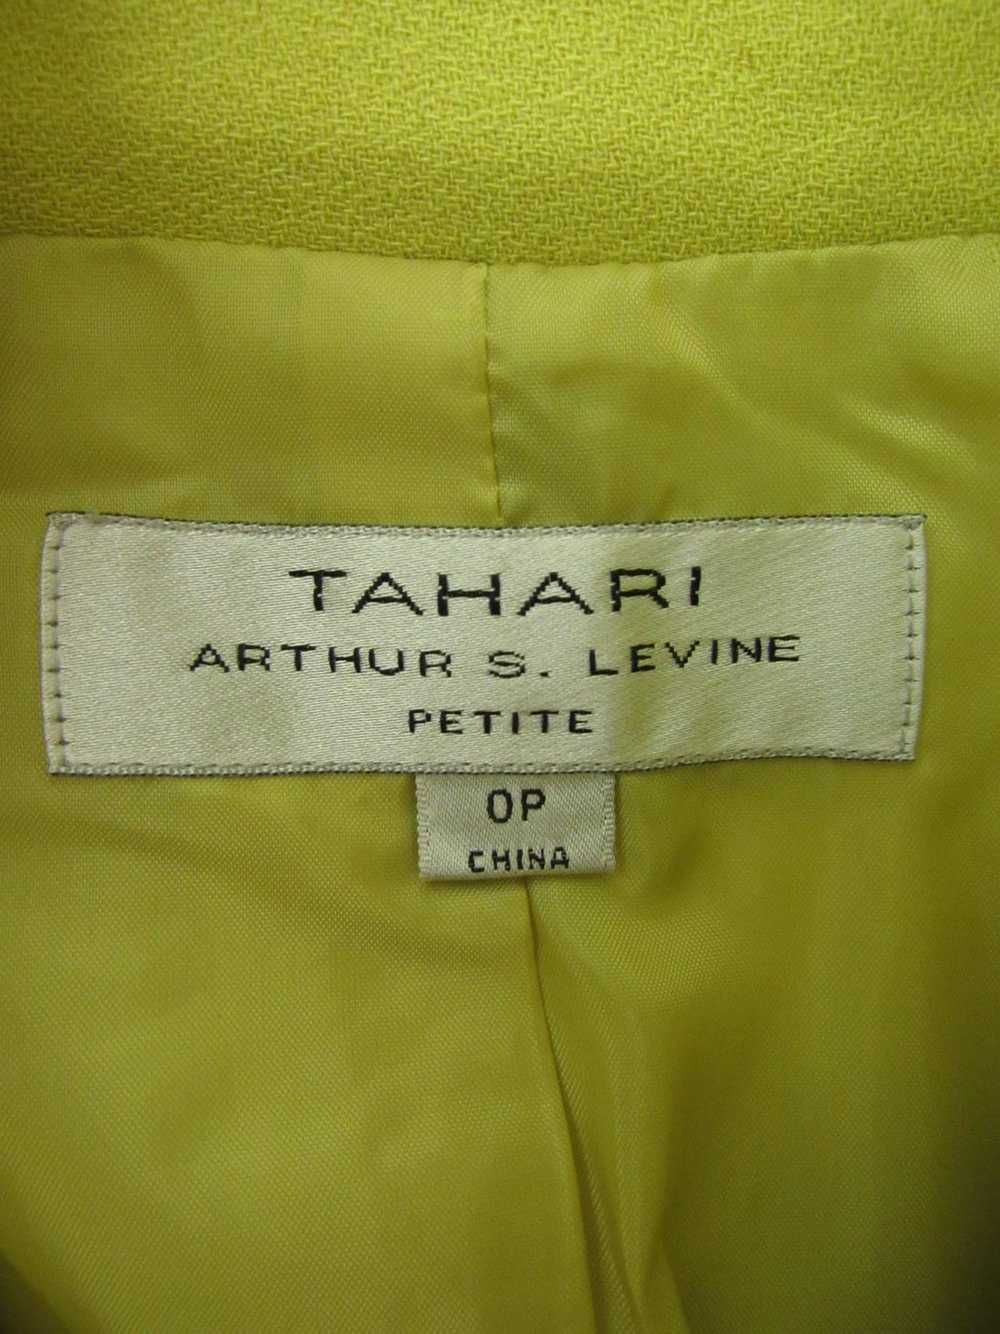 Tahari Arthur S. Levine Blazer Jacket - image 3